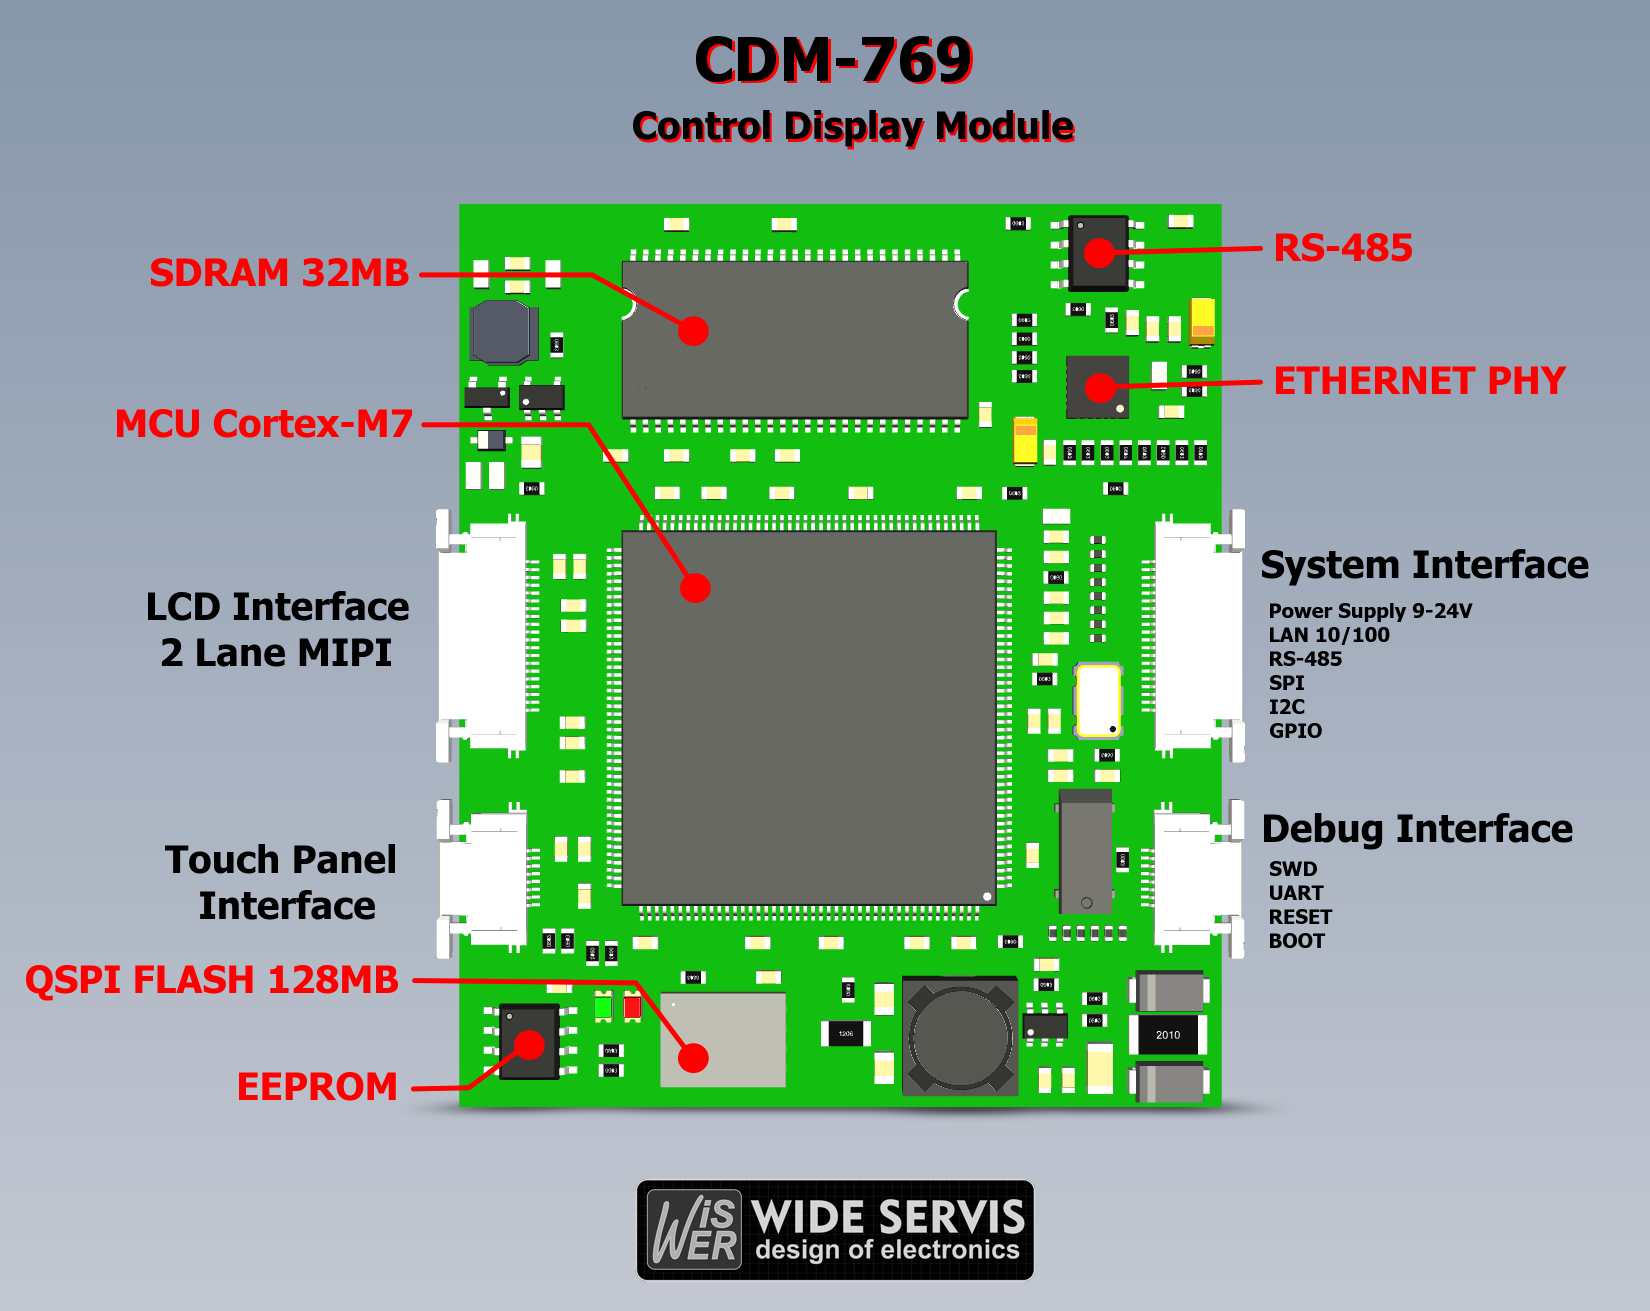 CDM-769 (Control Display Module)